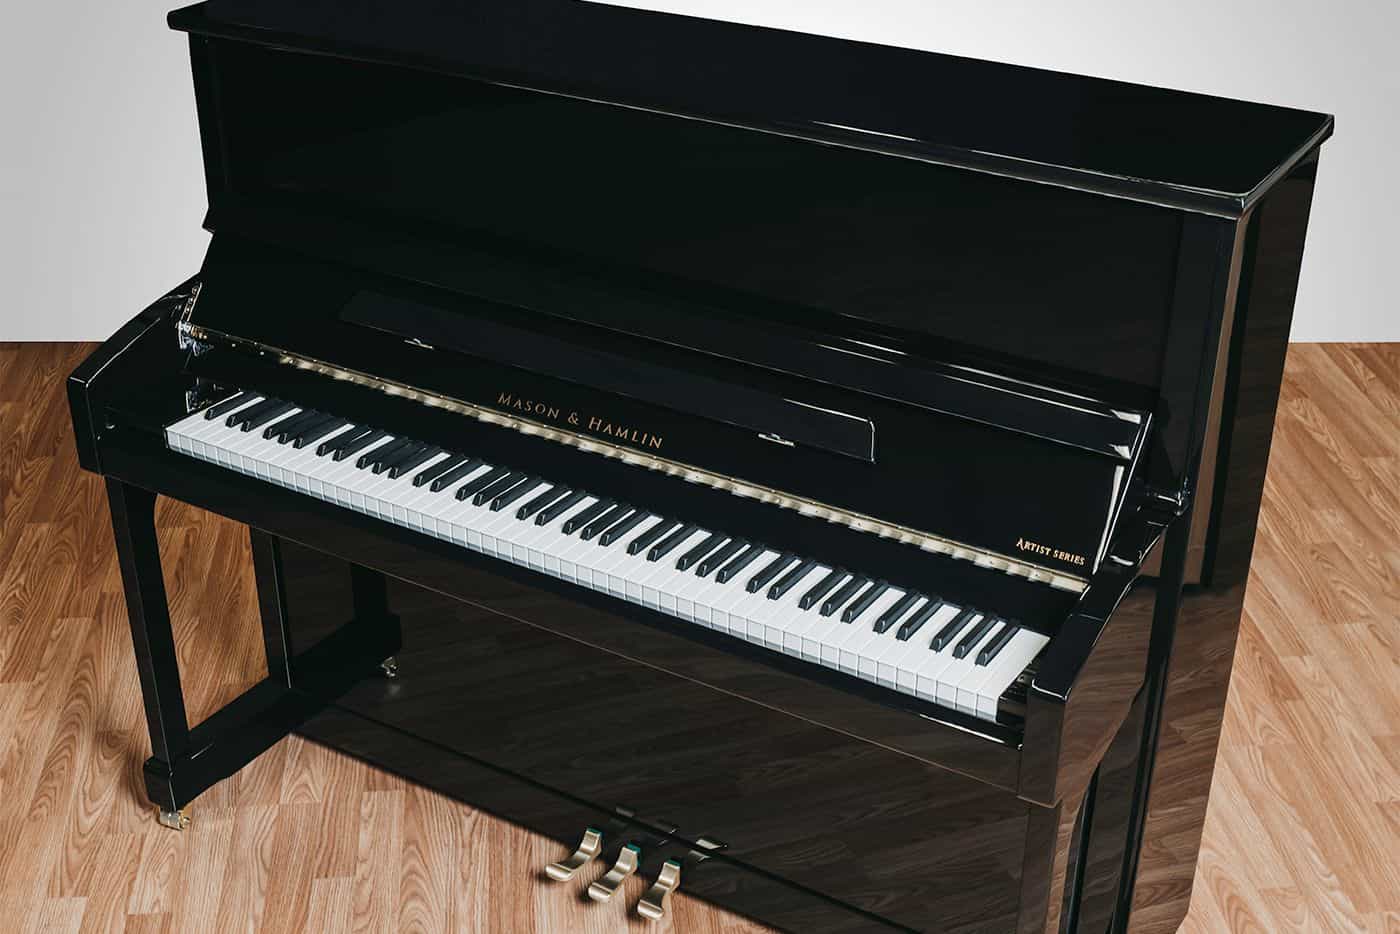 49 upright MHA 123 1400 • Mason & Hamlin Piano Company • Made in the USA